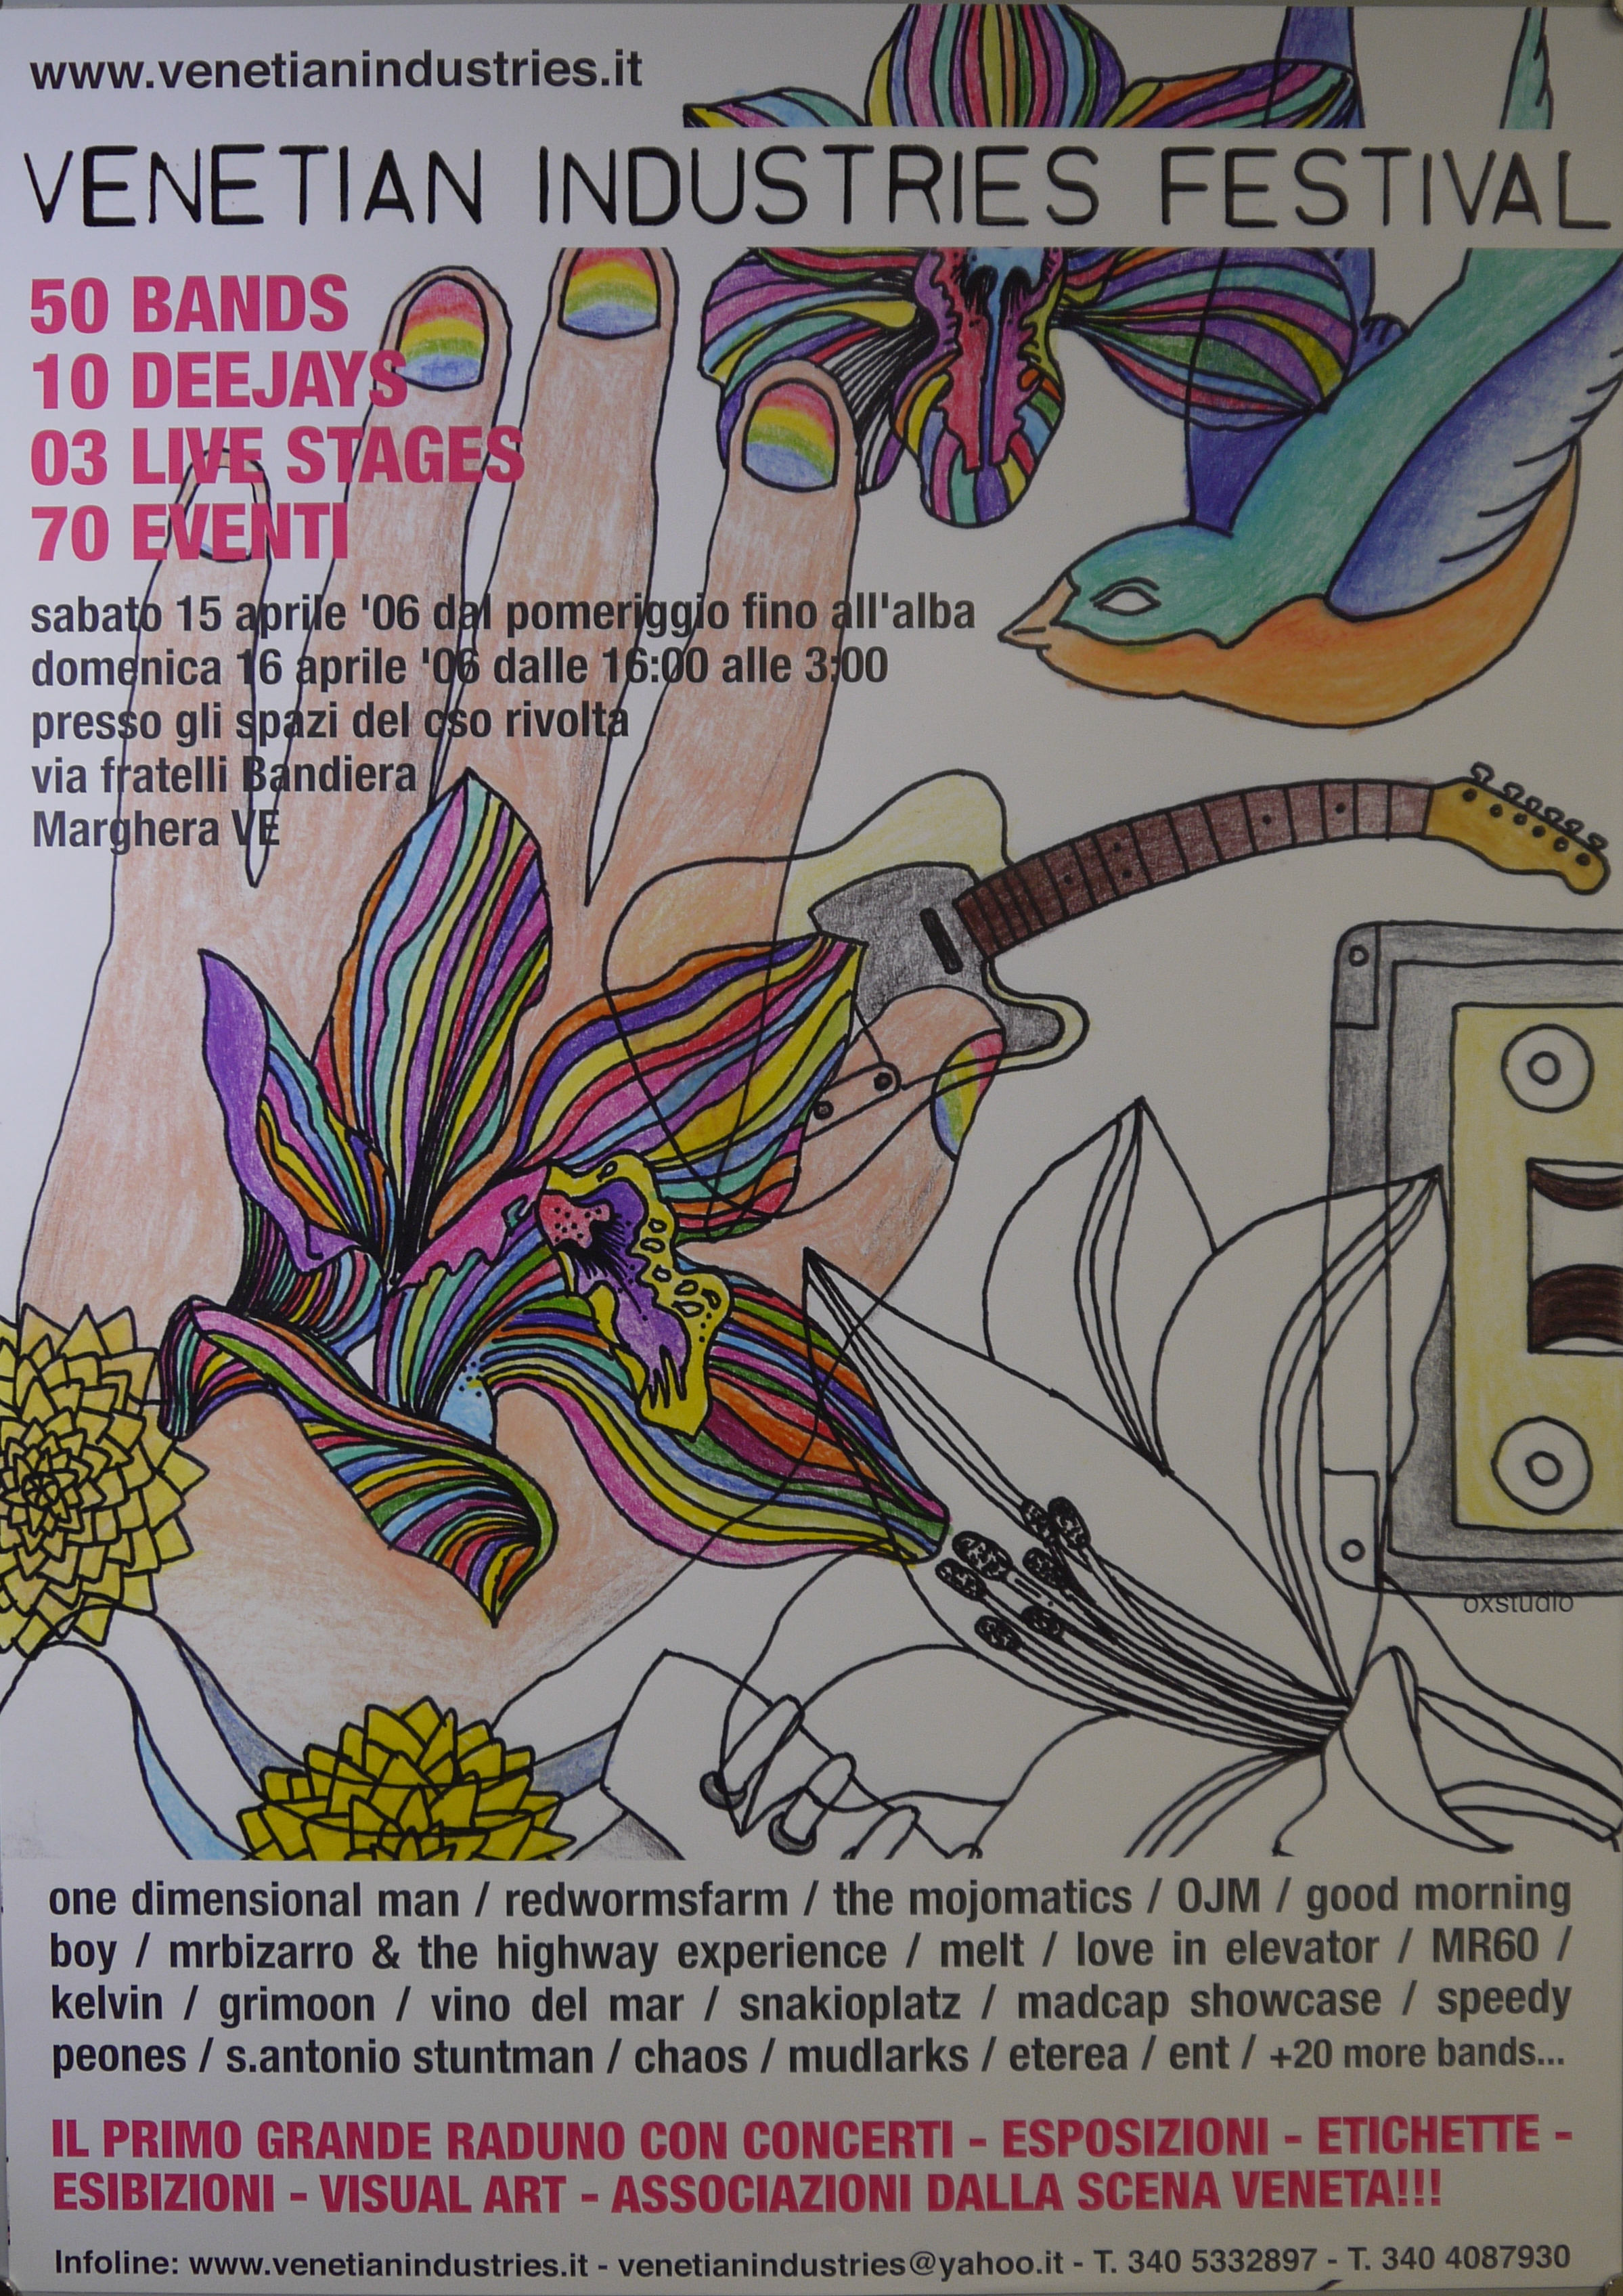 Cinque fiori di cui due arcobaleno, uccello colorato, mano con unghie arcobaleno, chitarra elettrica e audiocassetta (manifesto) - ambito veneto (inizio XXI)